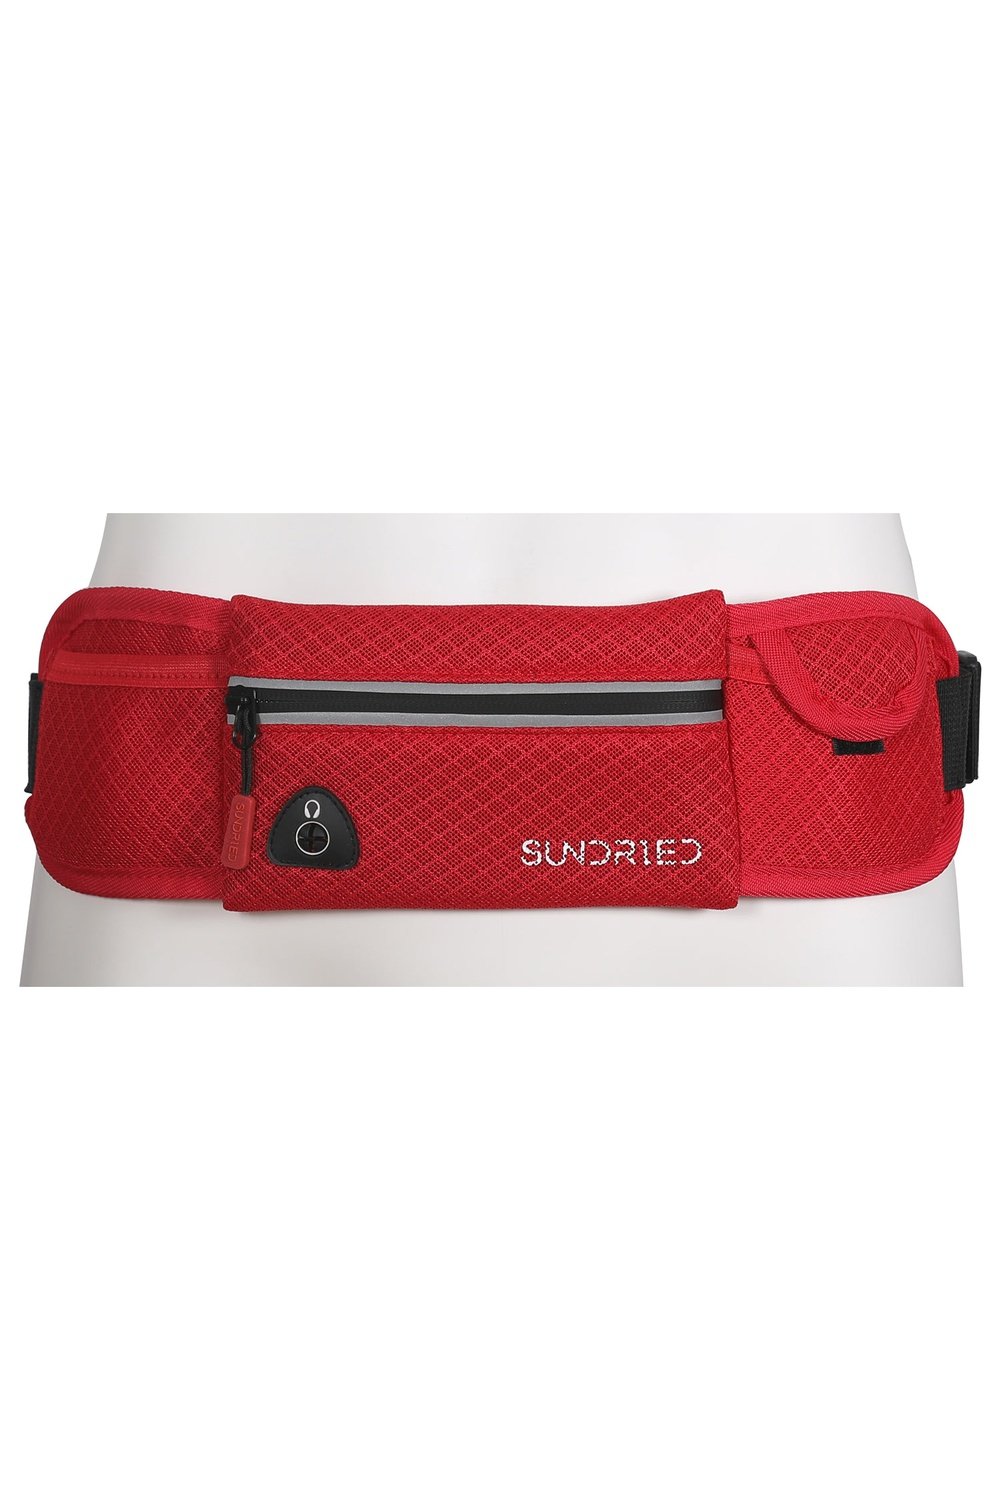 Sundried Accessories Belt Ultrarun Bags SD0410 Activewear